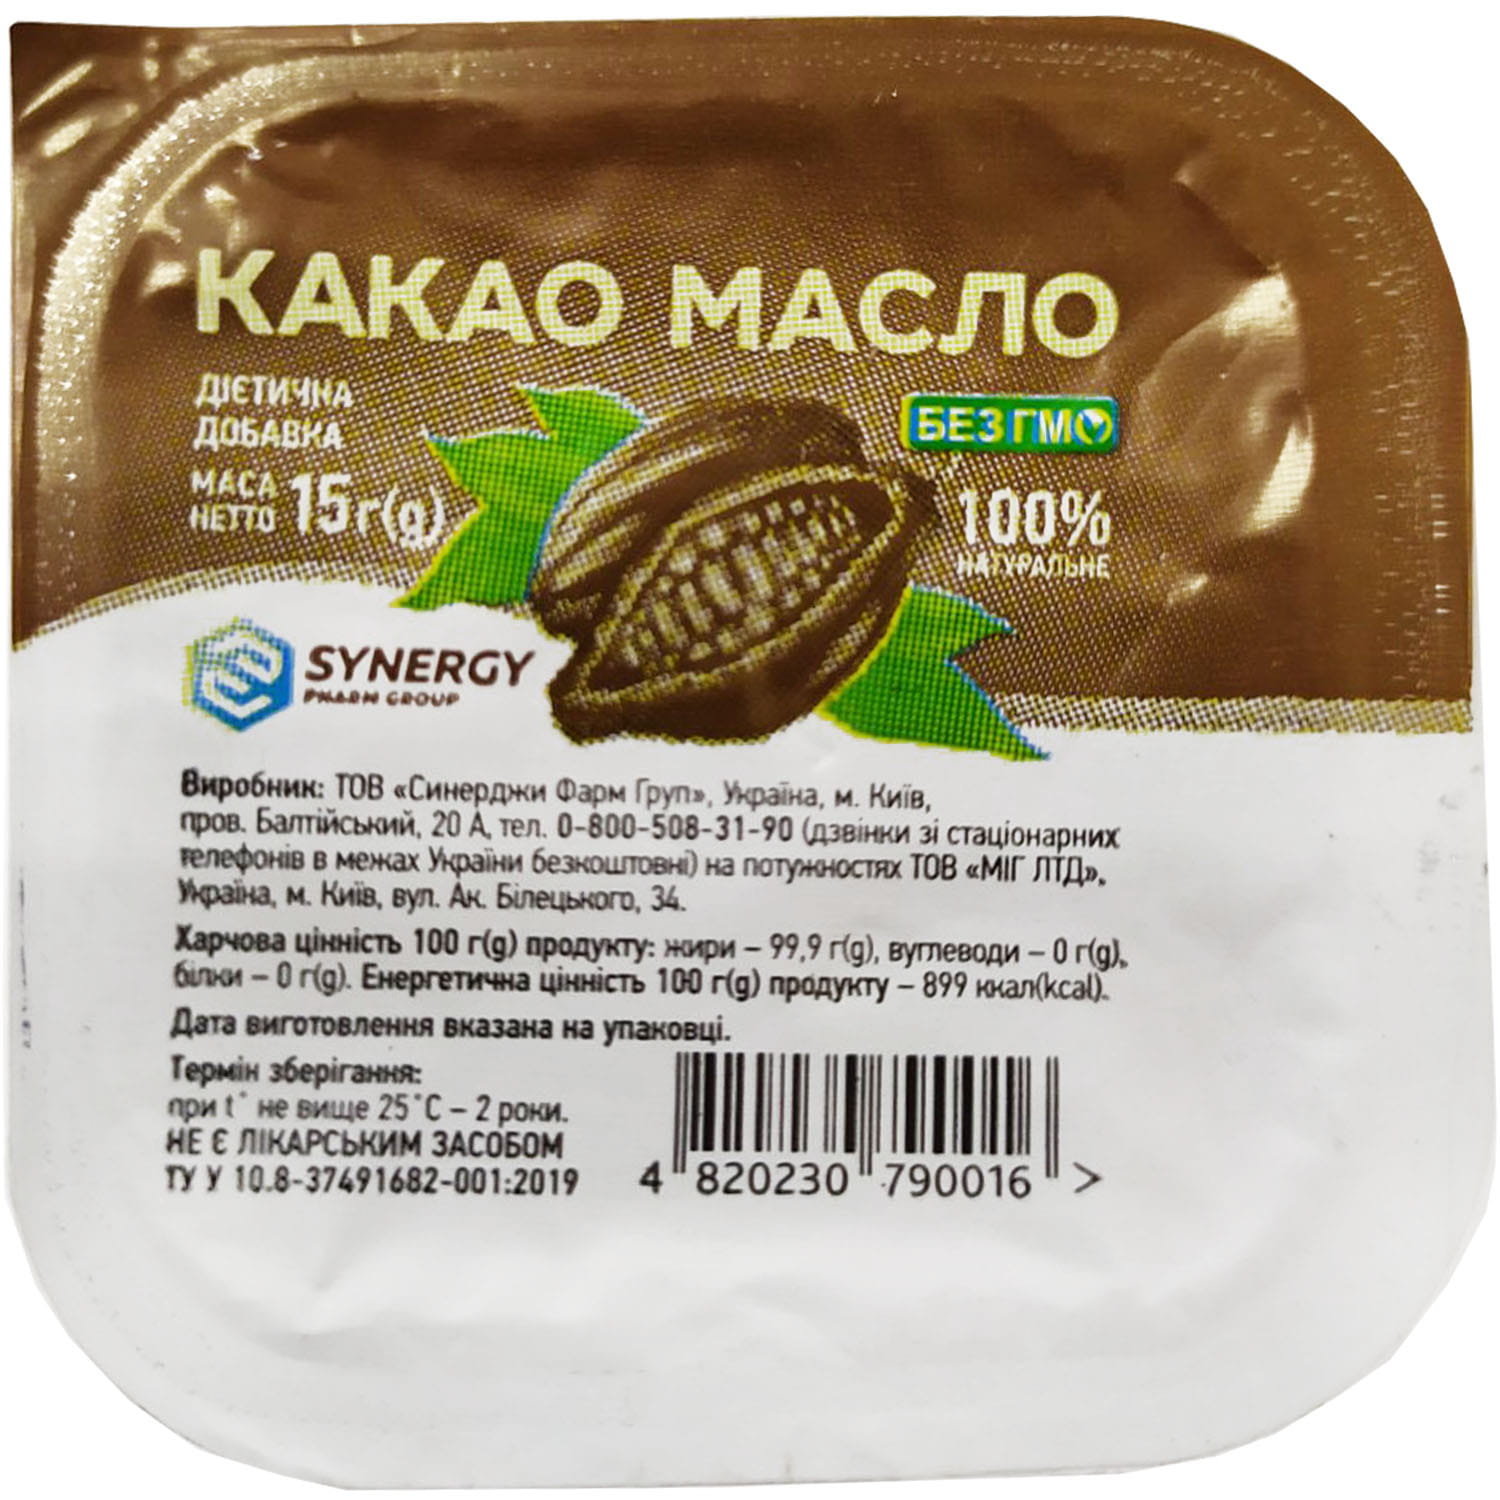 Какао-масло купить в Минске